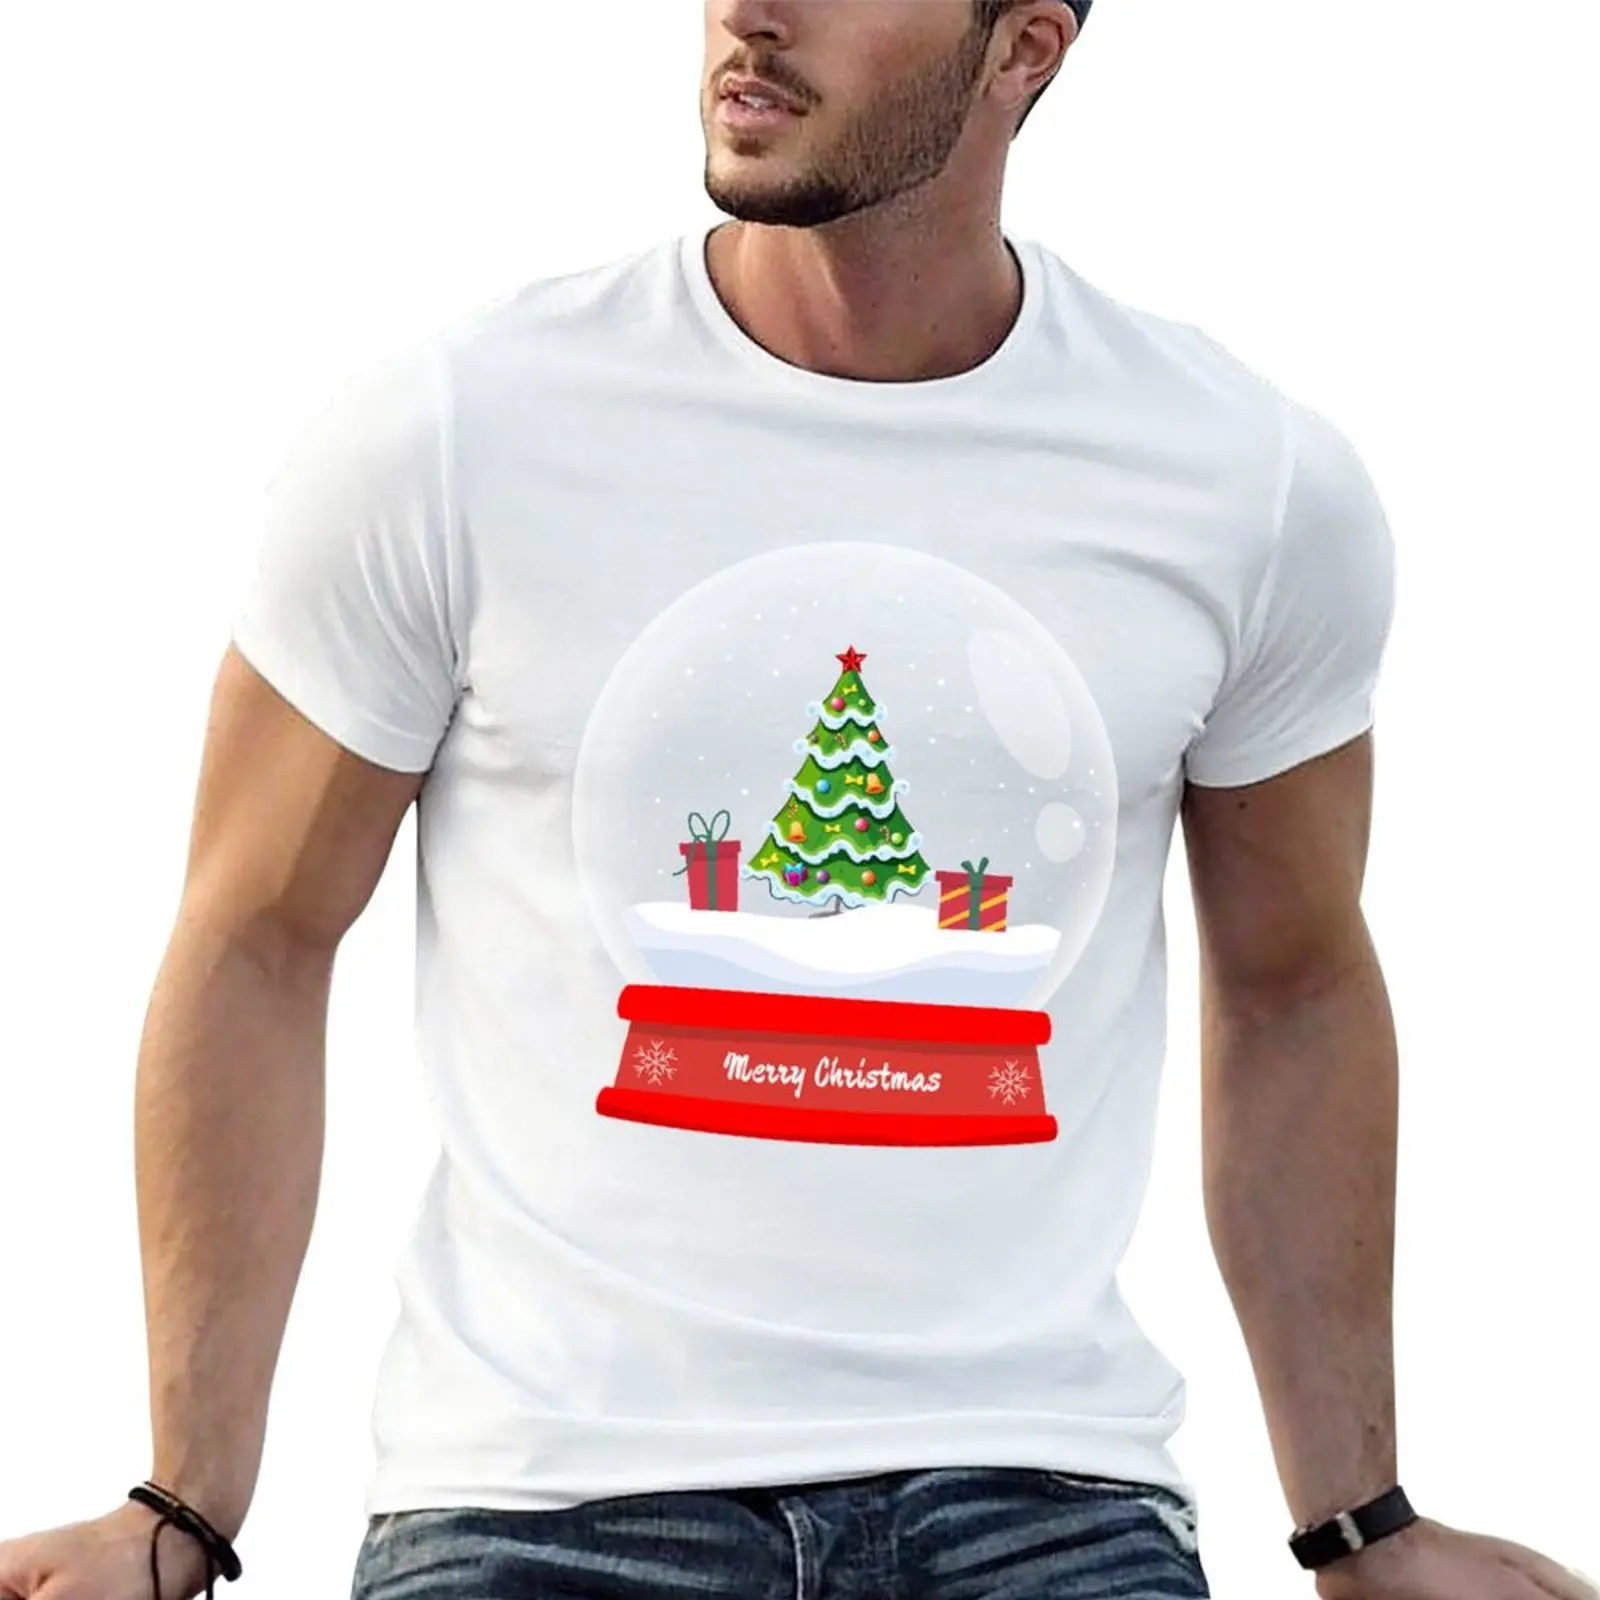 

Рождественская Дизайнерская футболка с надписью "Merry Christmas" для мальчика, великолепные мужские футболки из хлопка